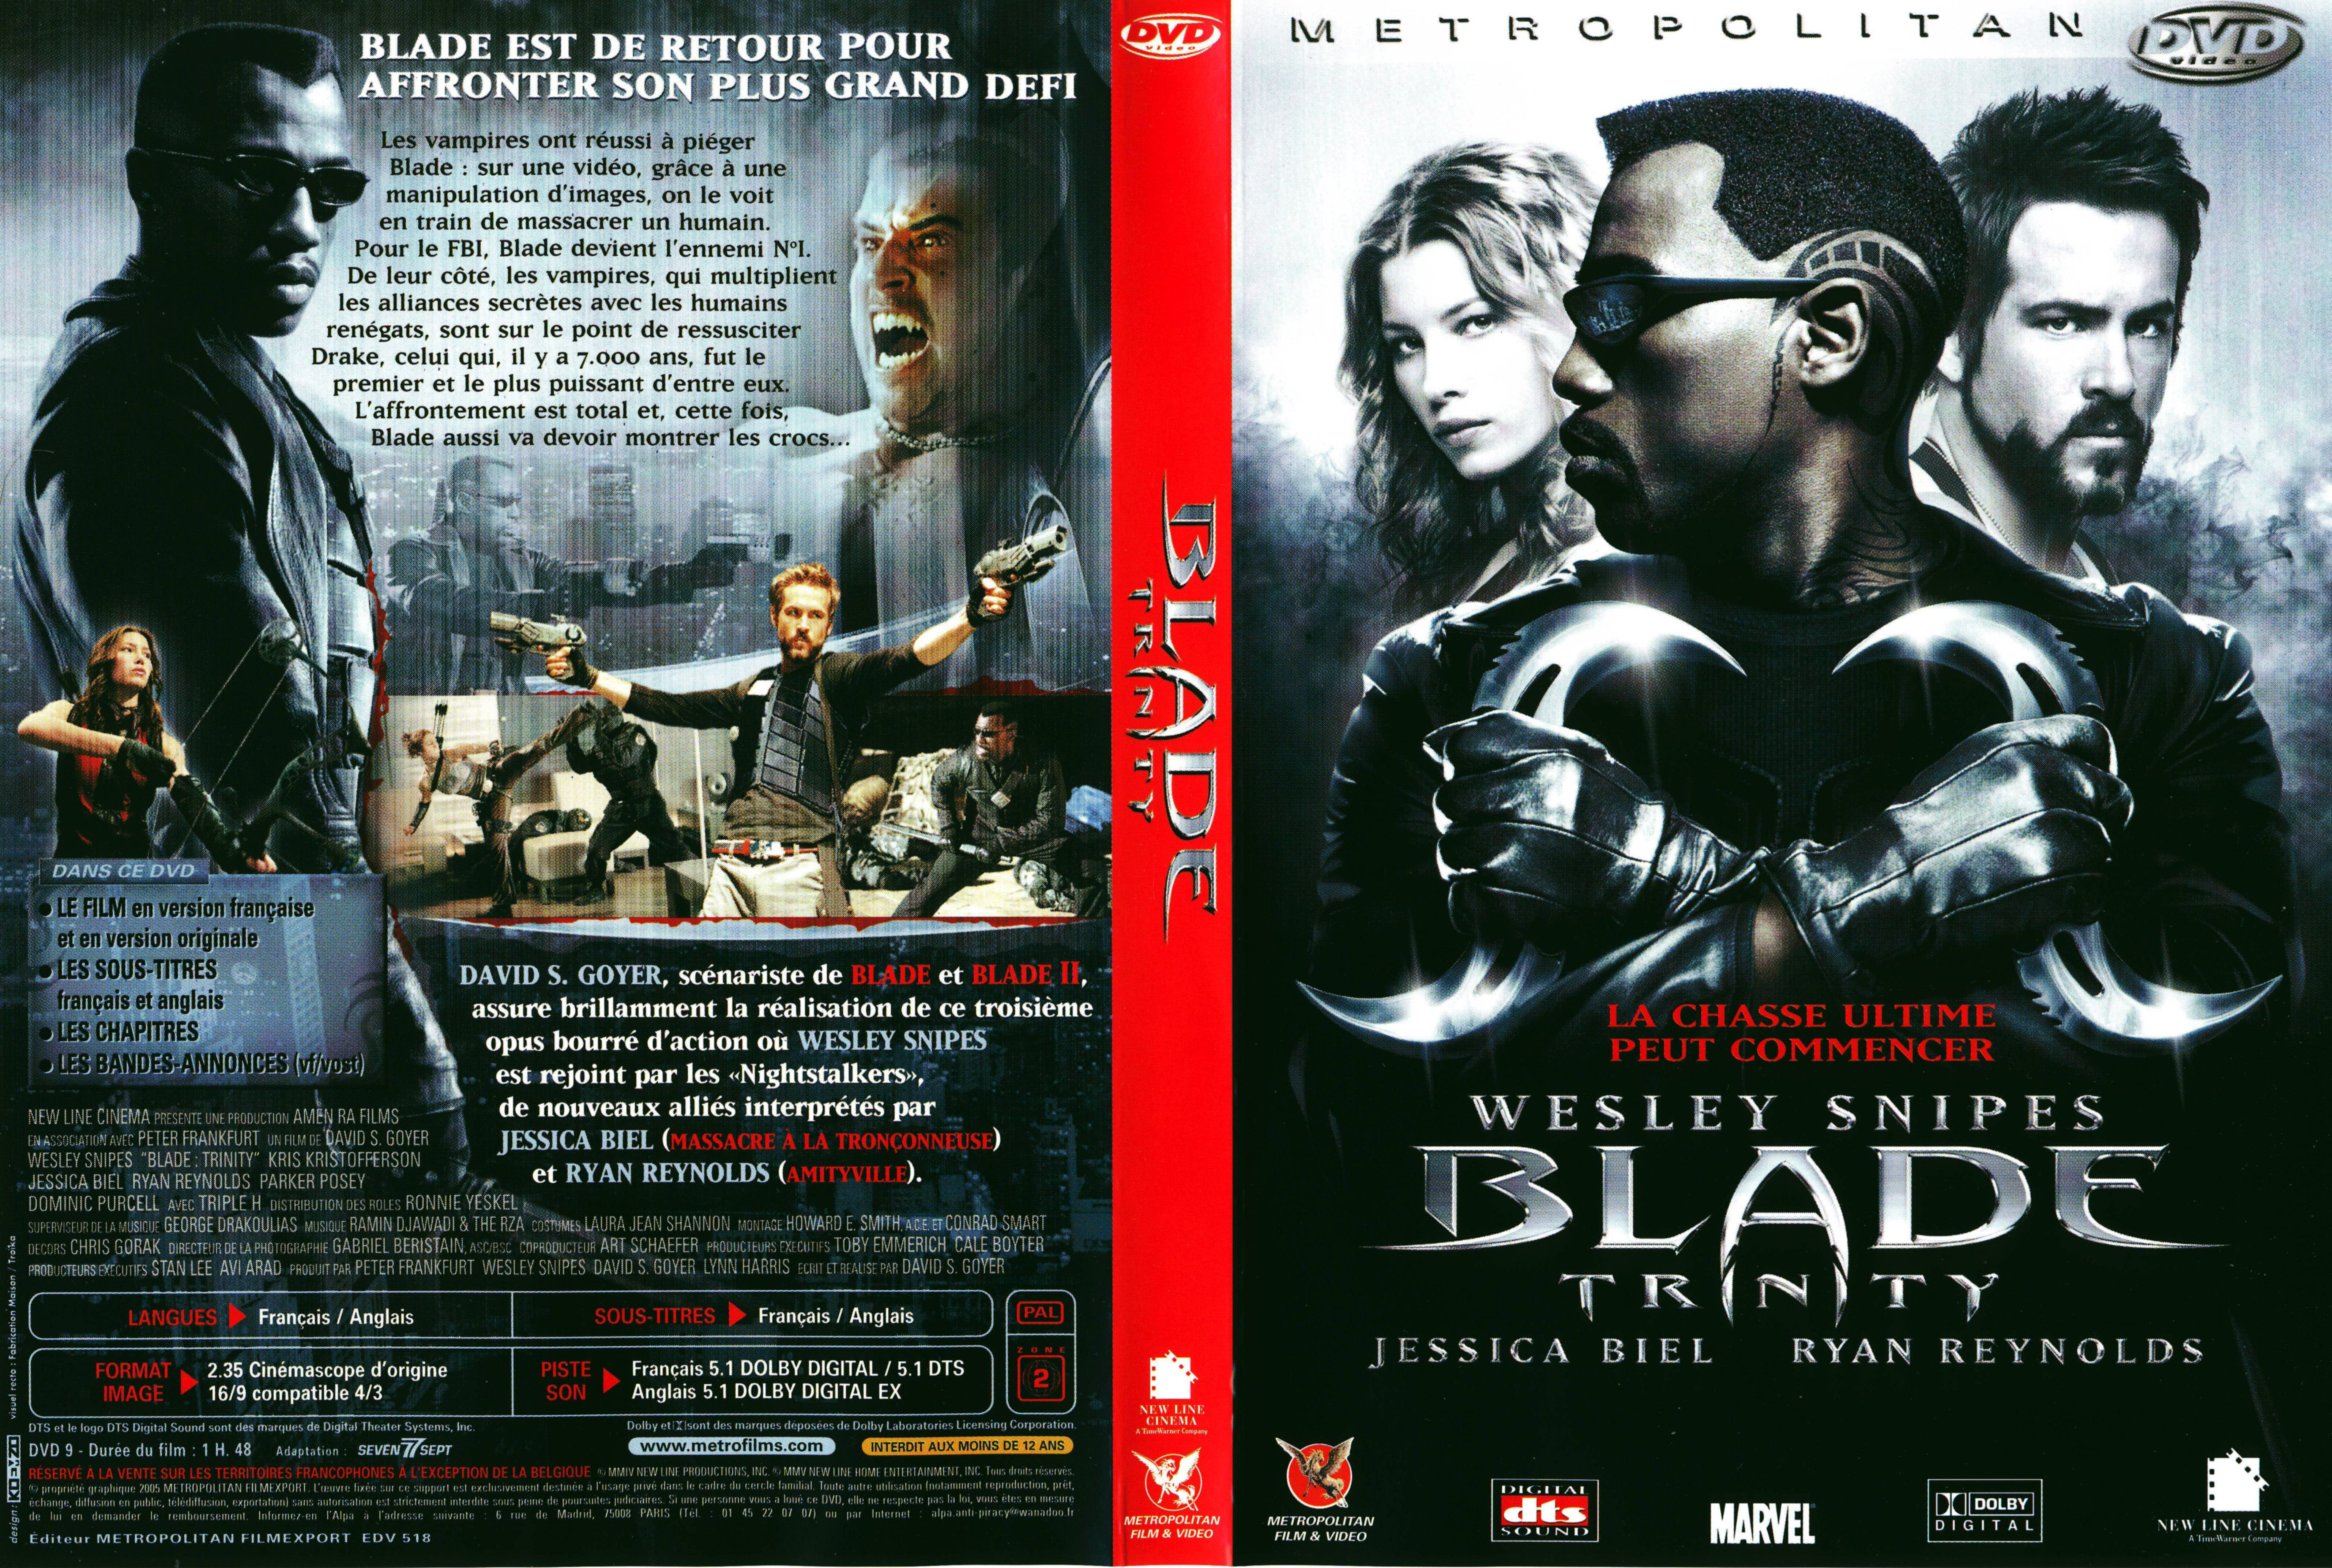 Jaquette DVD Blade trinity v5